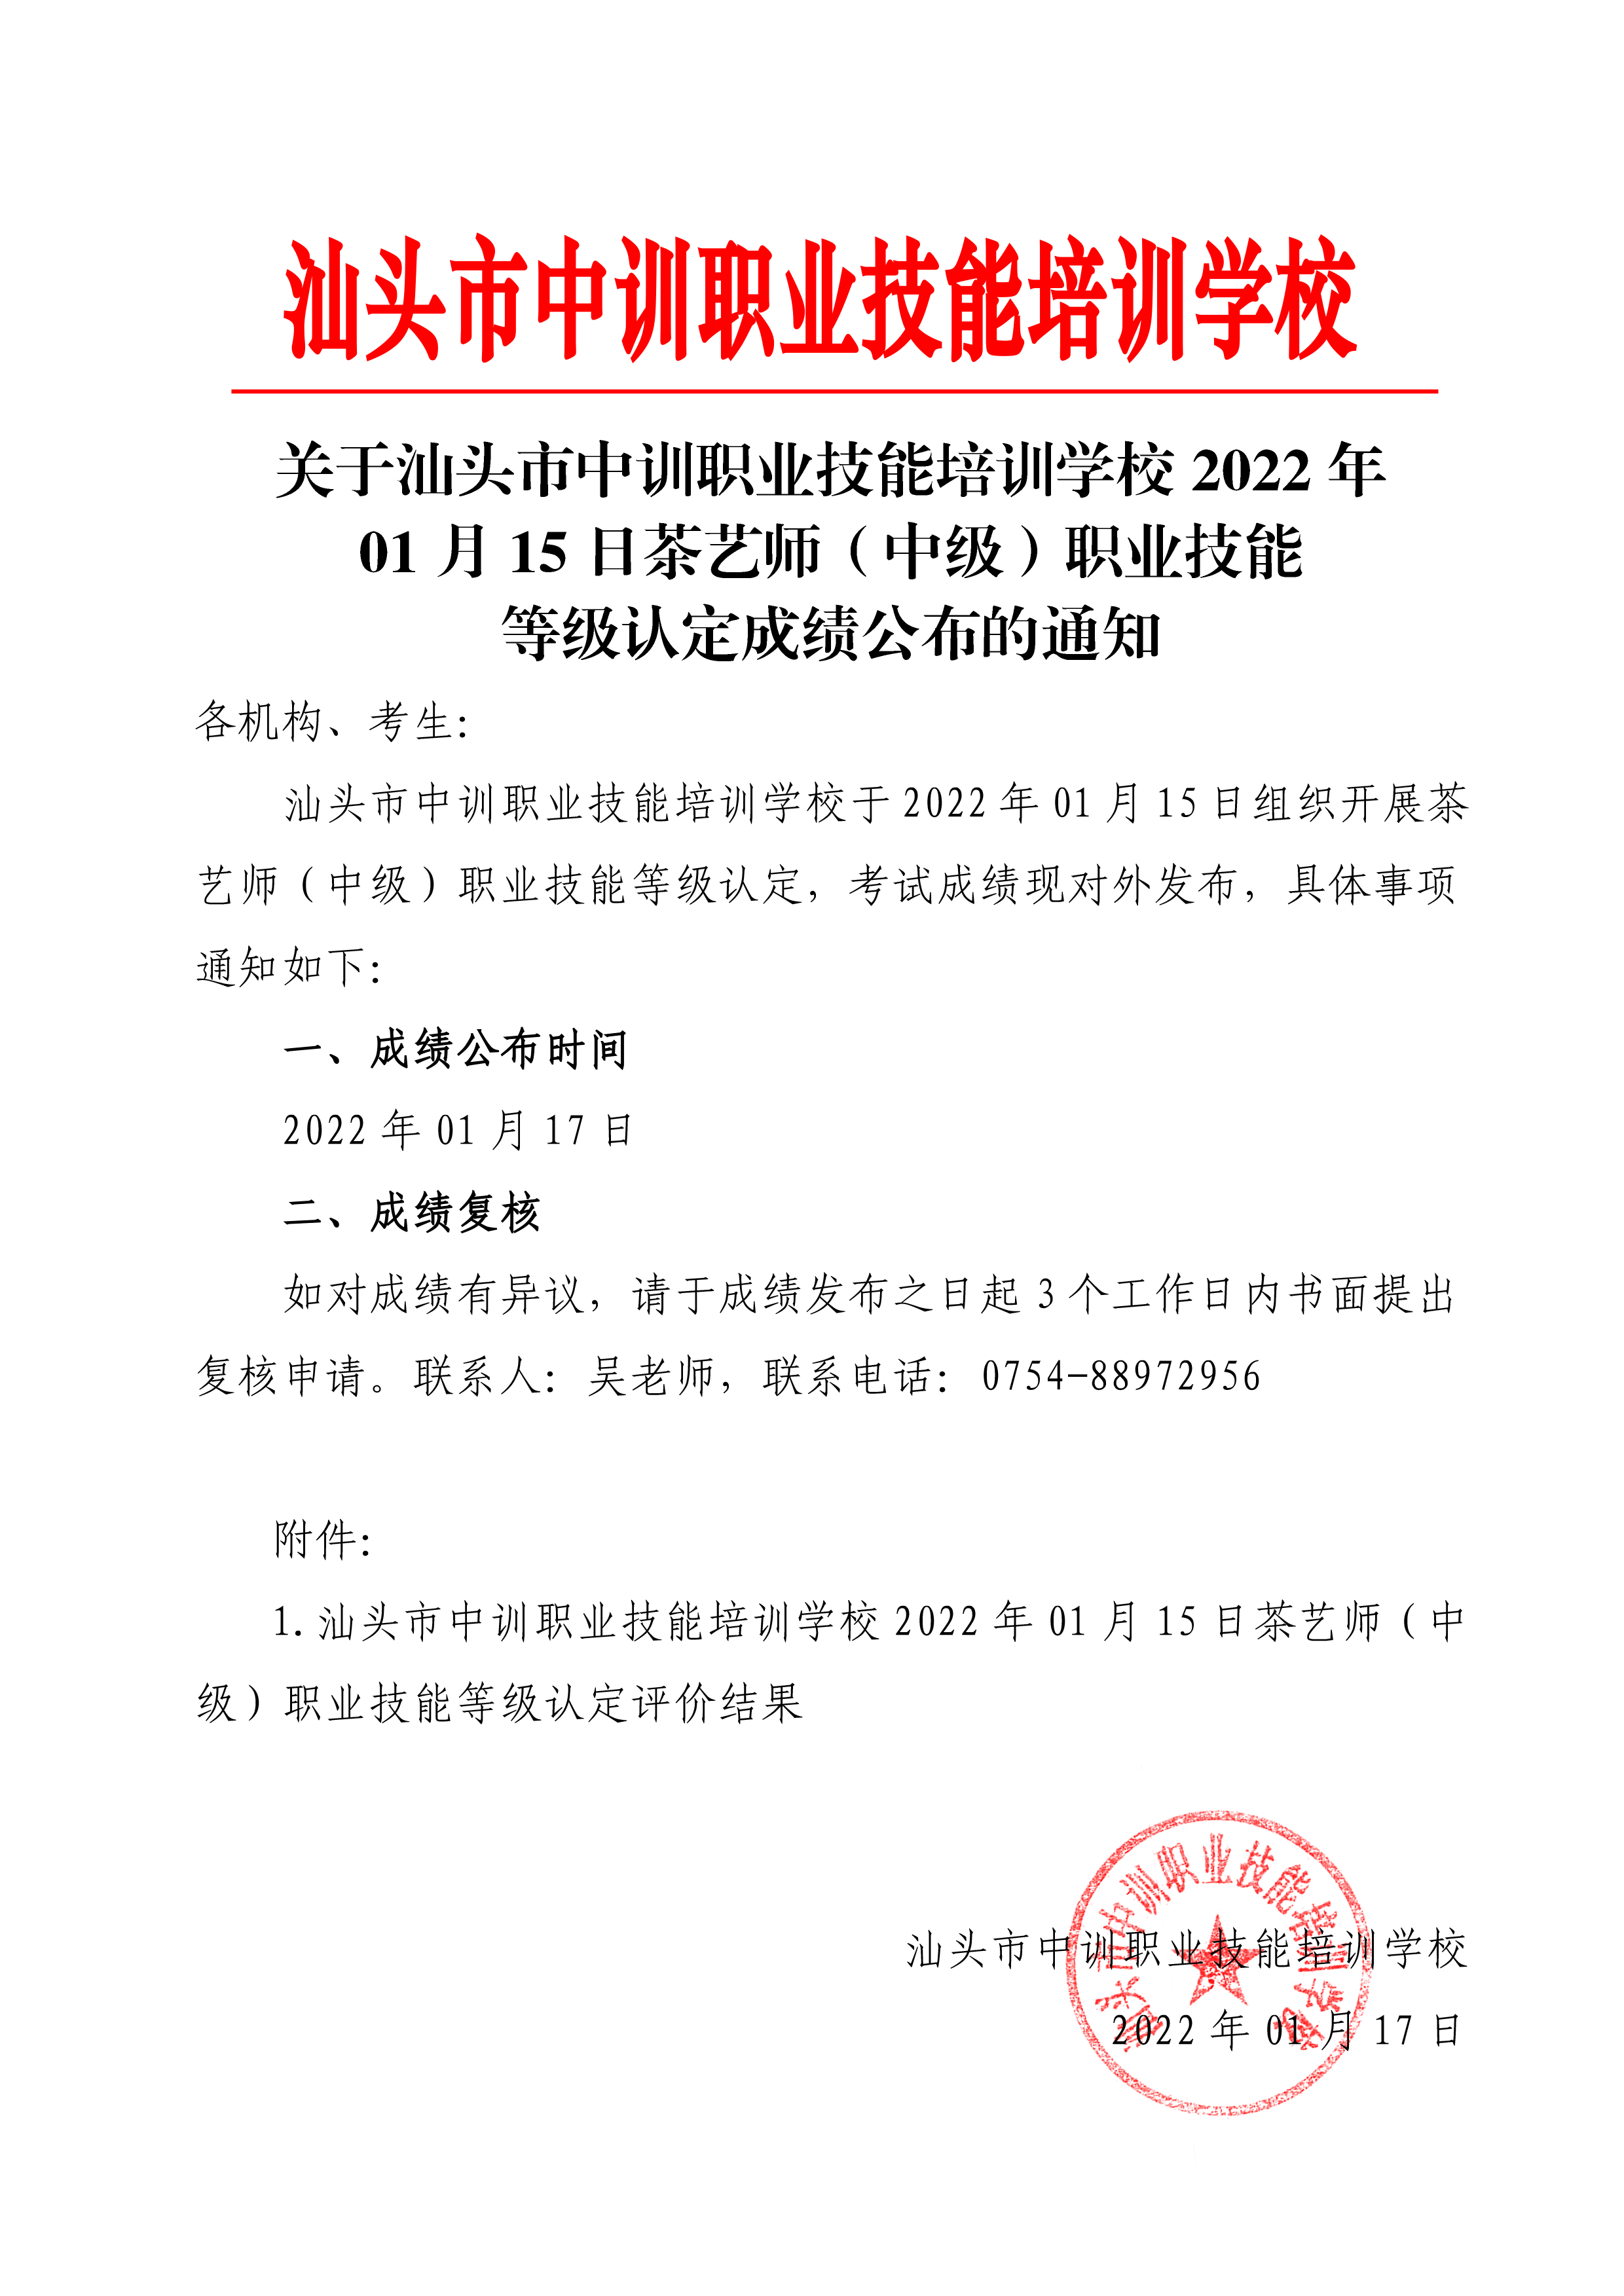 220115-16茶艺师（初）中级职业技能等级认定成绩公布通知-2 副本.png